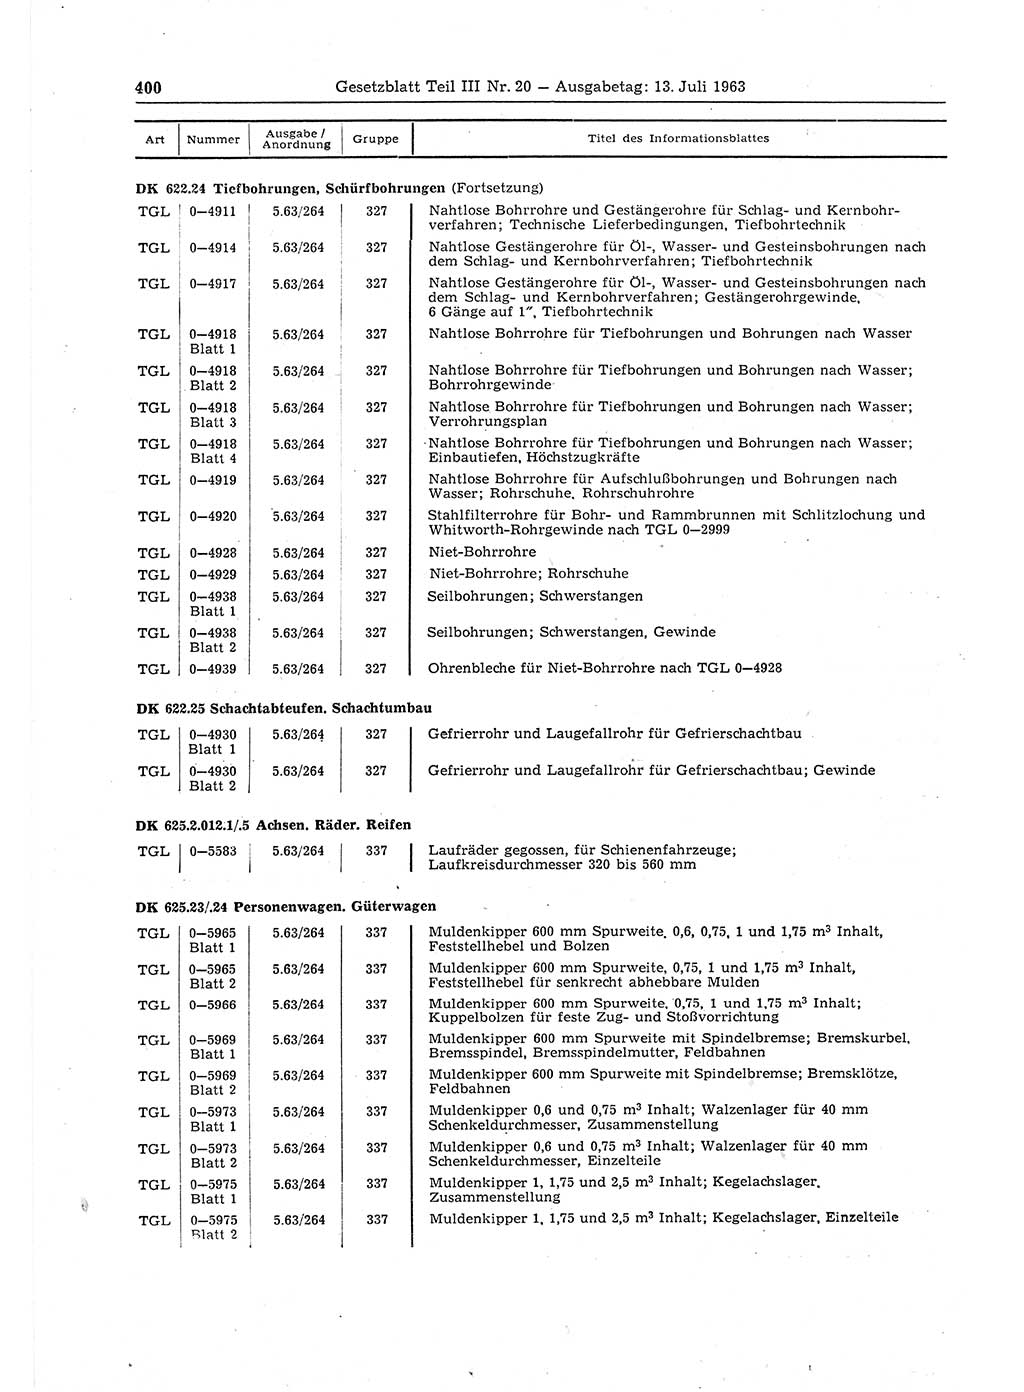 Gesetzblatt (GBl.) der Deutschen Demokratischen Republik (DDR) Teil ⅠⅠⅠ 1963, Seite 400 (GBl. DDR ⅠⅠⅠ 1963, S. 400)